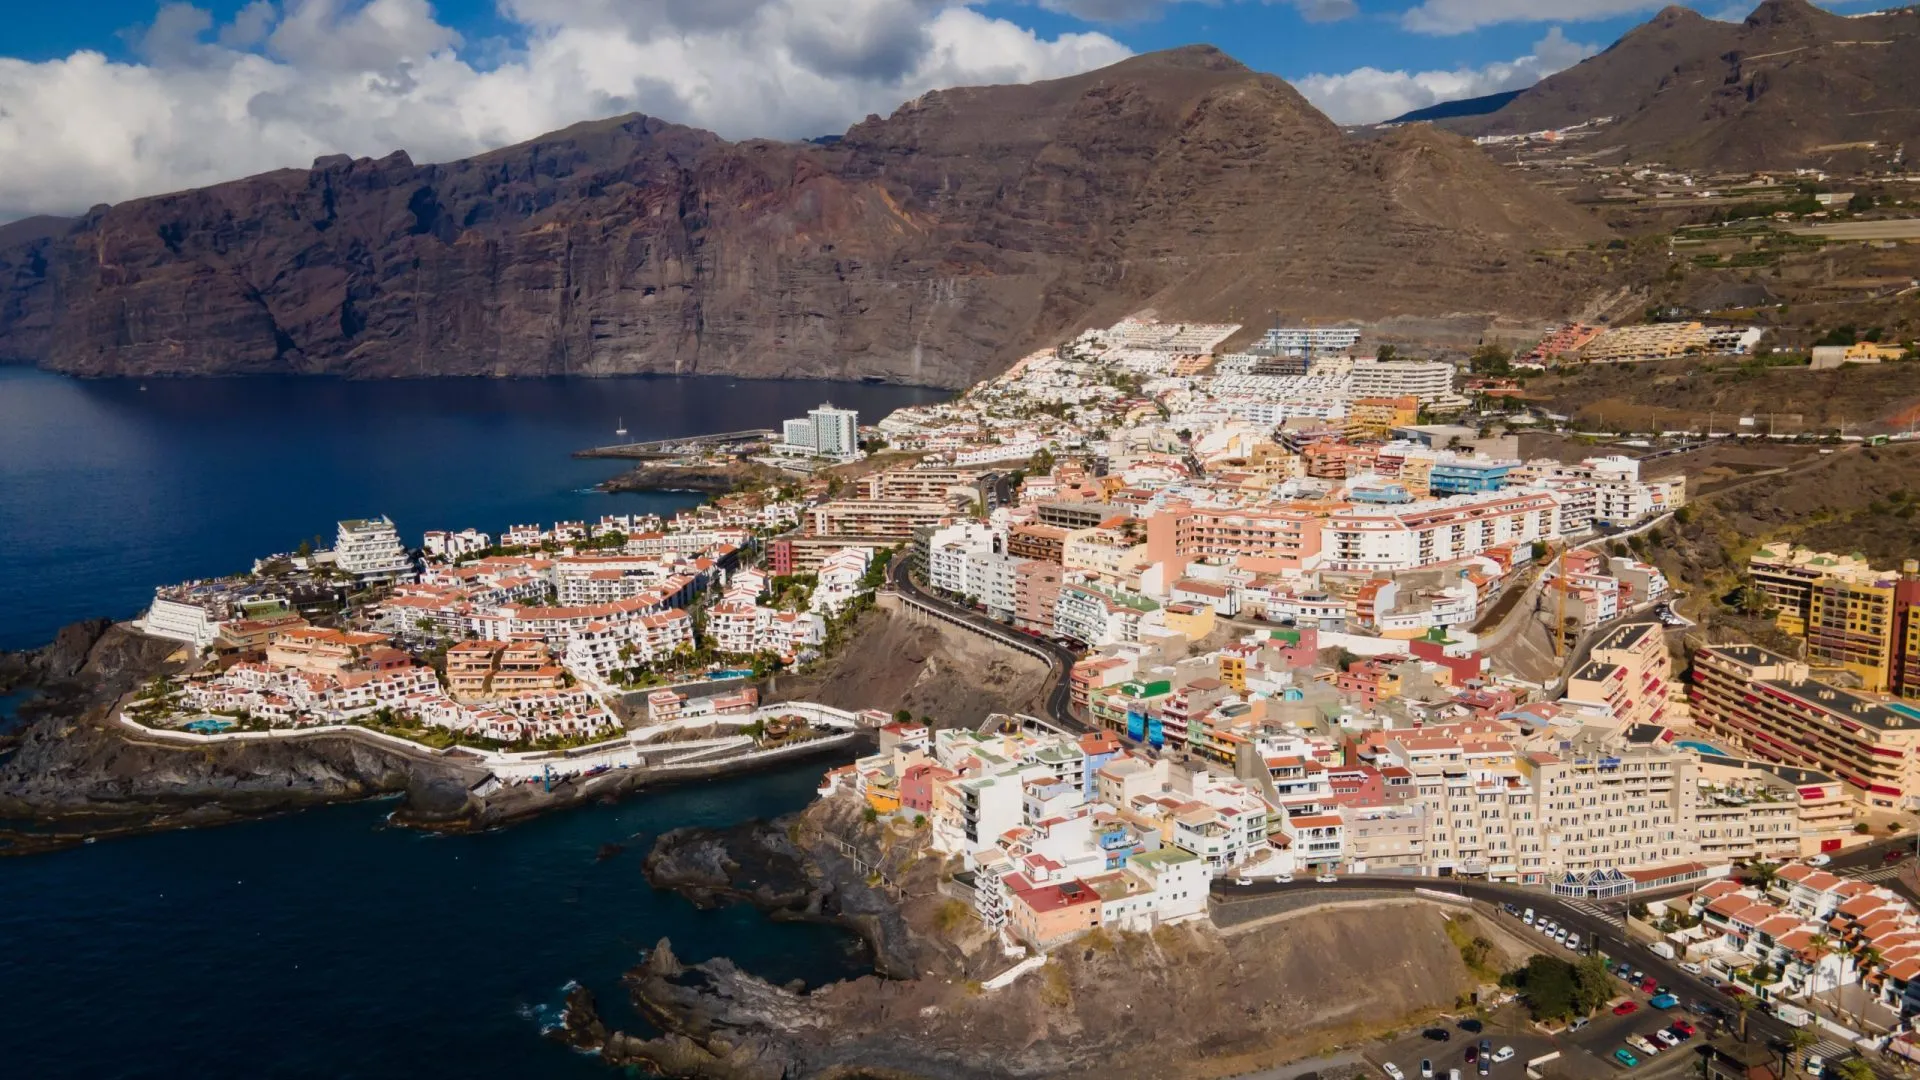 Puerto de Santiago ligger mellem Los Gigantes og Playa de la Arena på Tenerifes vestkyst.